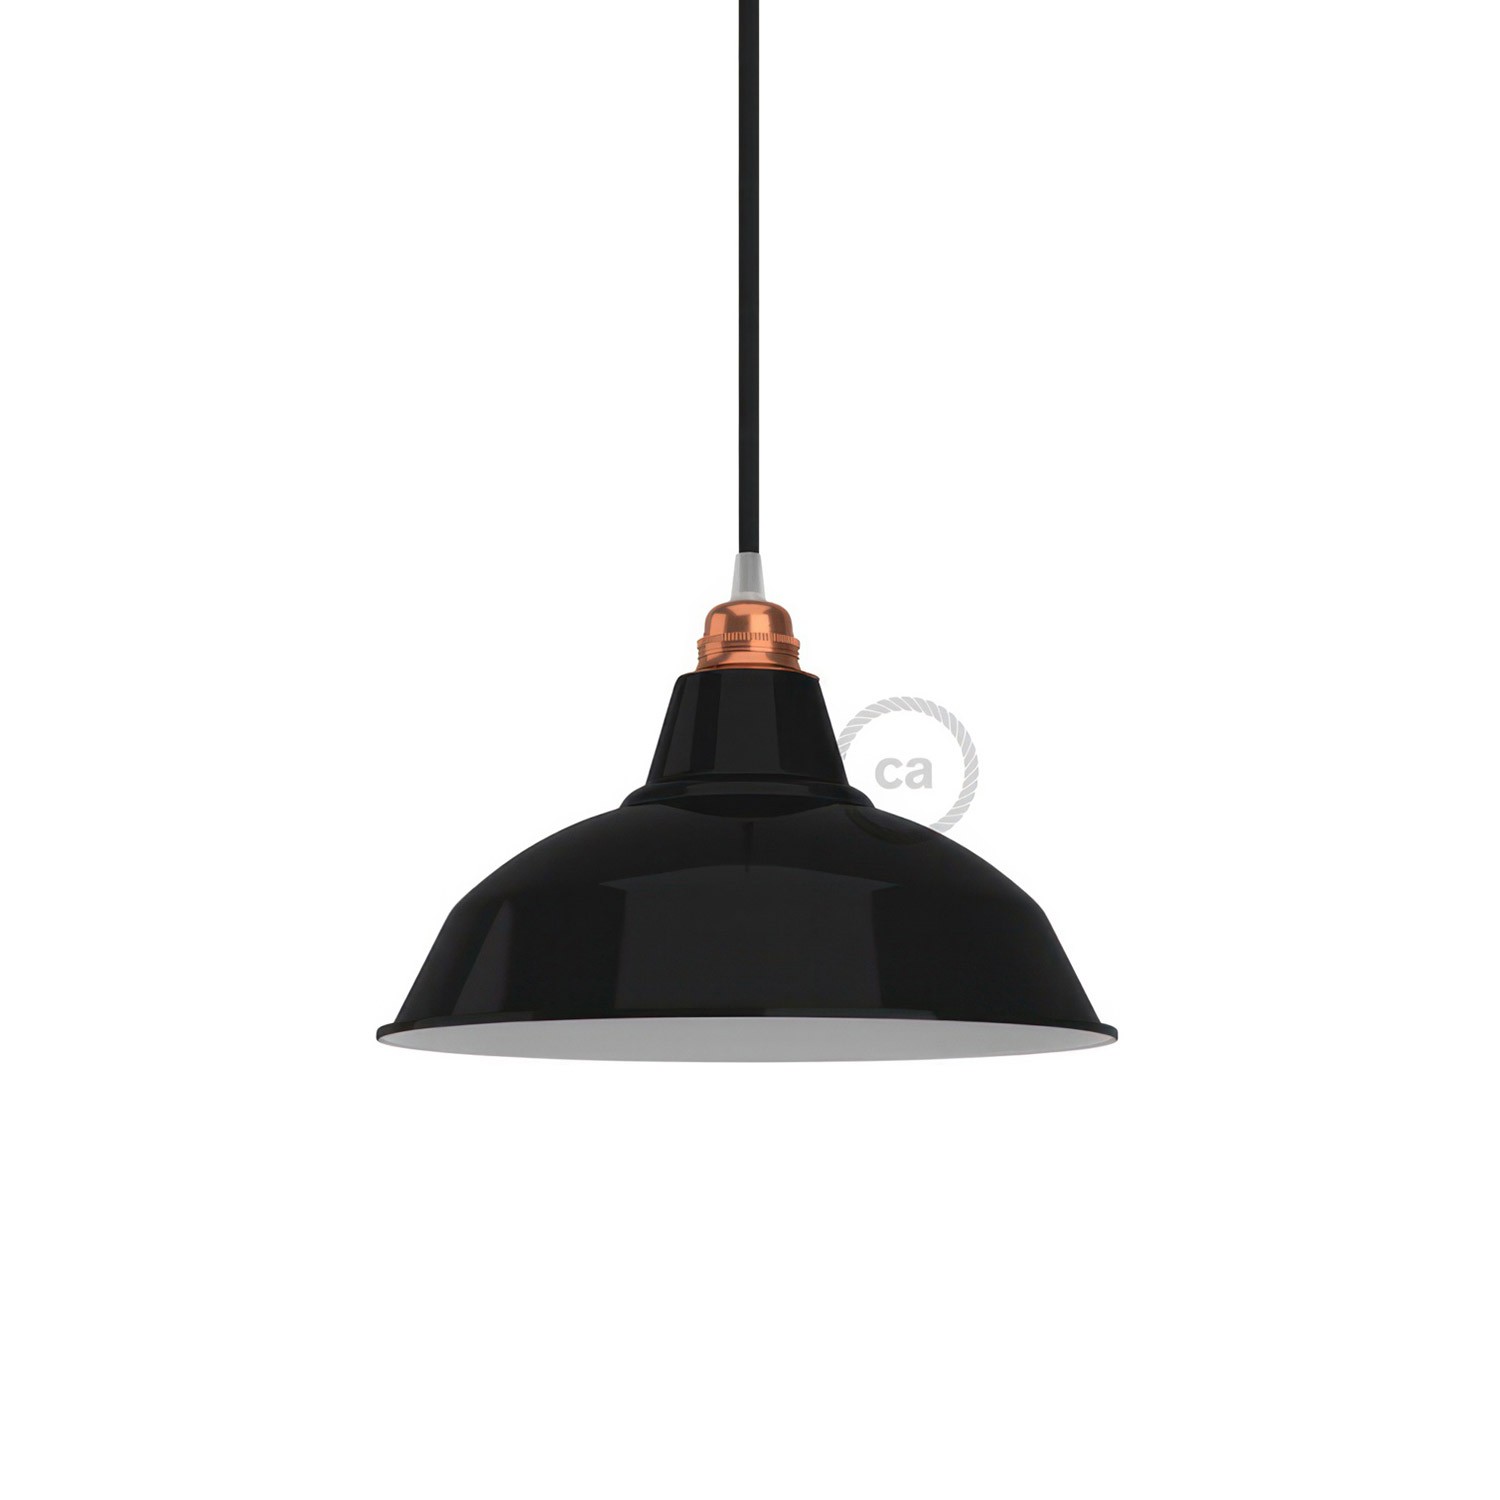 Lampenschirm Bistrot aus lackiertem Metall mit E27-Anschluss, 30 cm Durchmesser